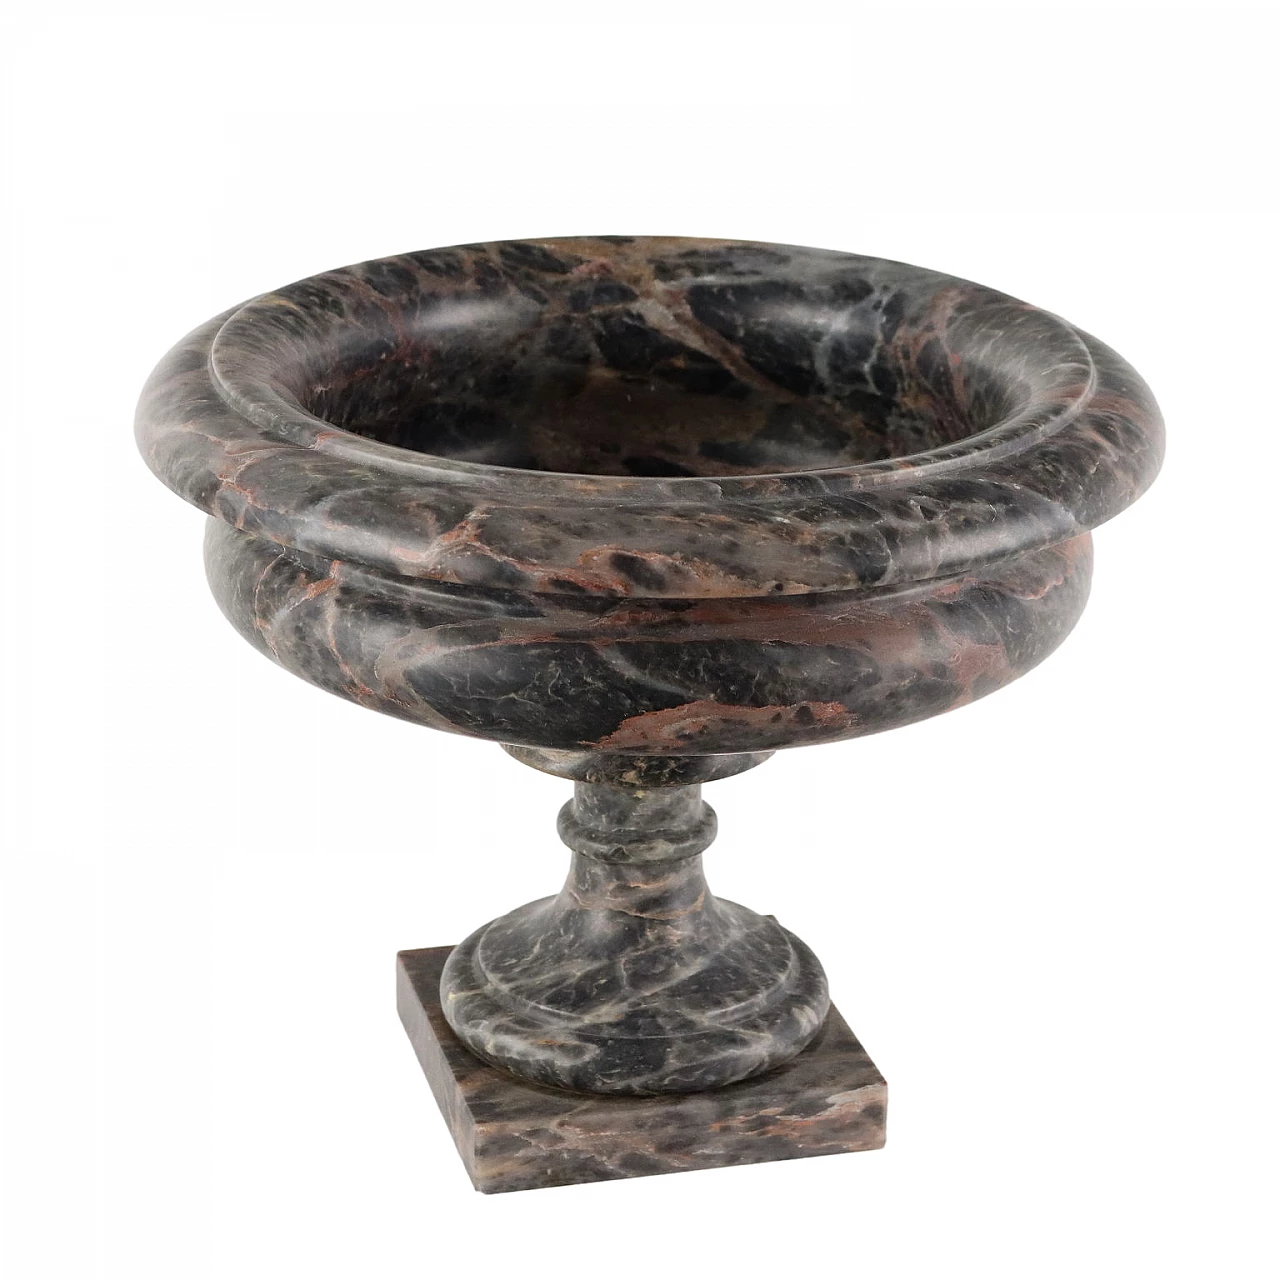 Macchiavecchia marble centerpiece cup 1